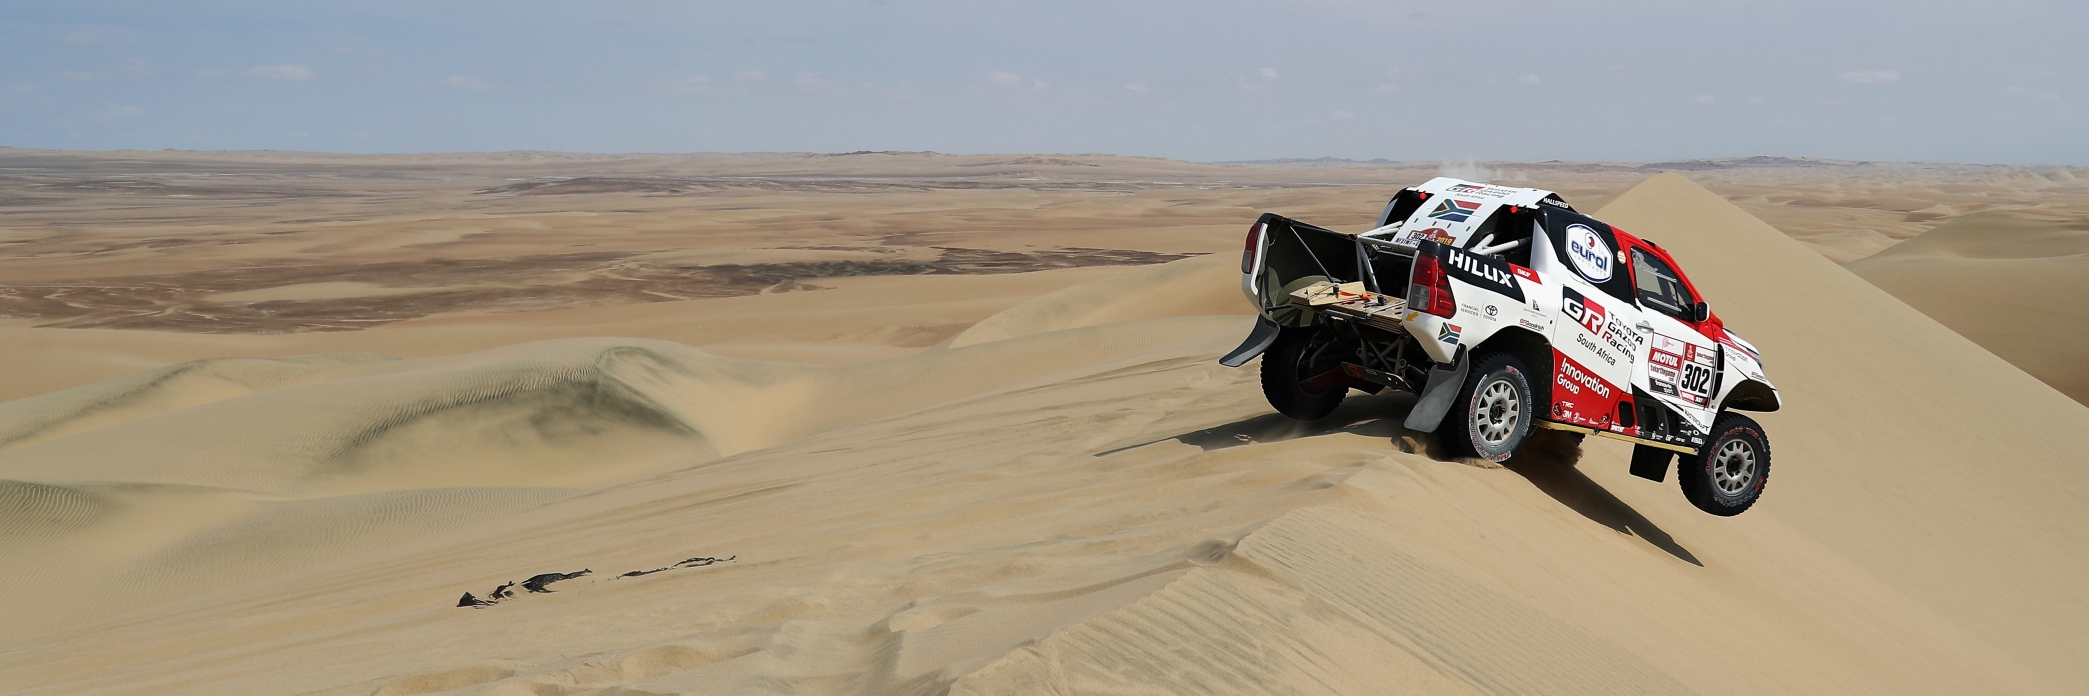 نسيج المناظر الطبيعة في السعودية يمنح سباق رالي داكار نكهة فريدة 